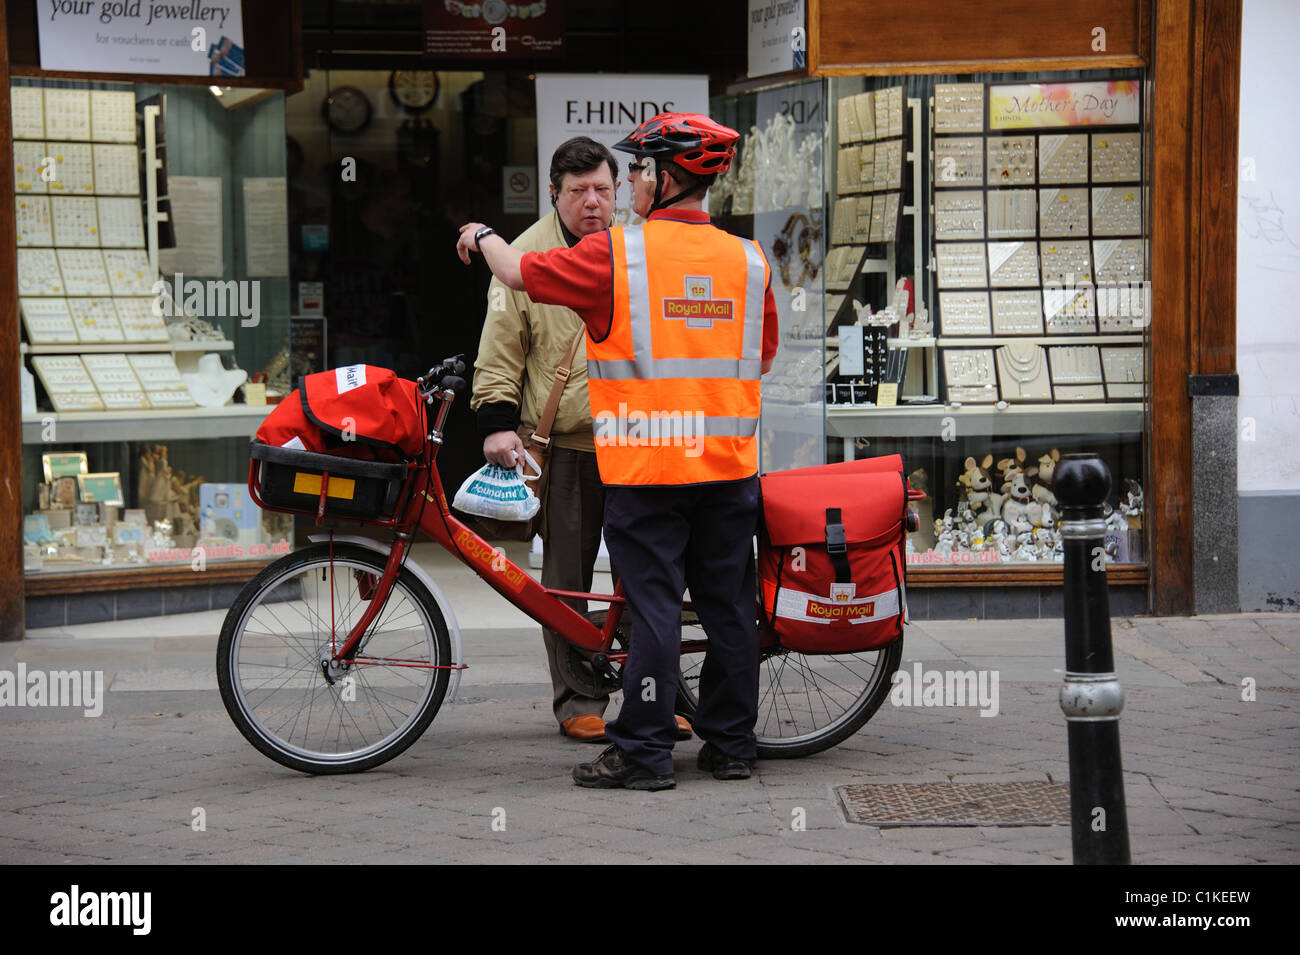 Postman avec un vélo donnant des directives à un passant sur son centre-ville, tour Banque D'Images